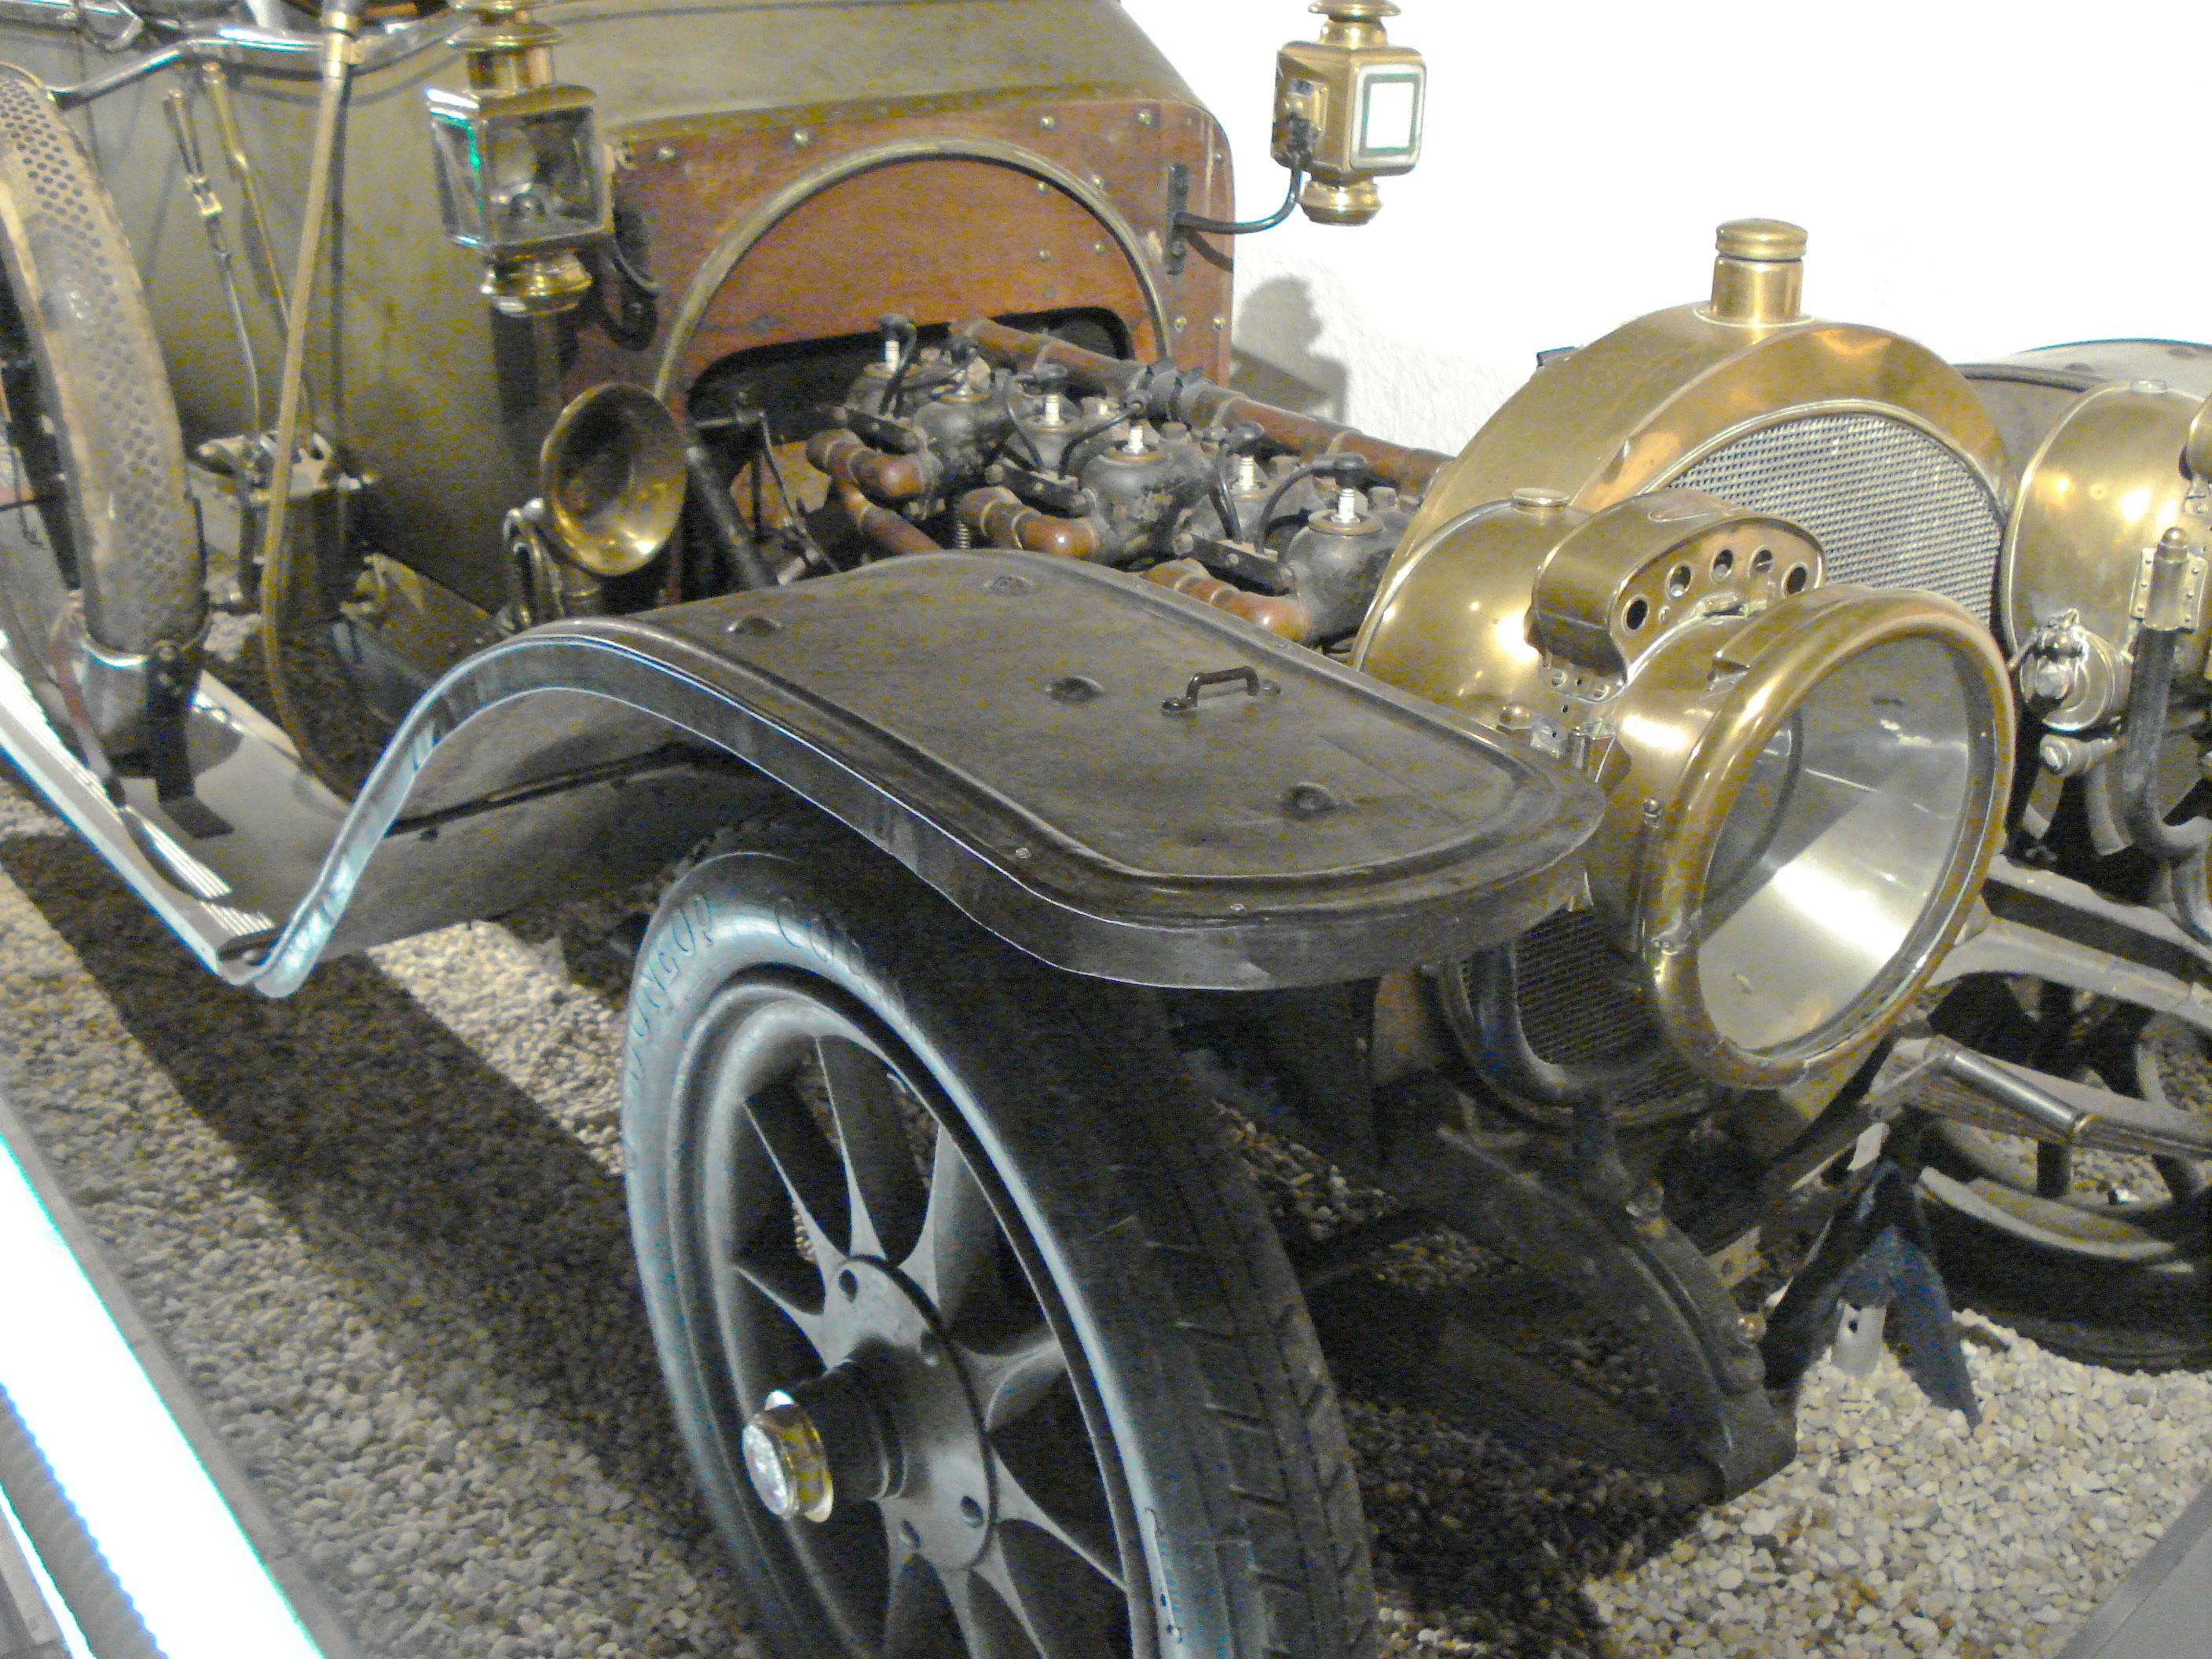 Jyg germain 1909 modele unique au monde